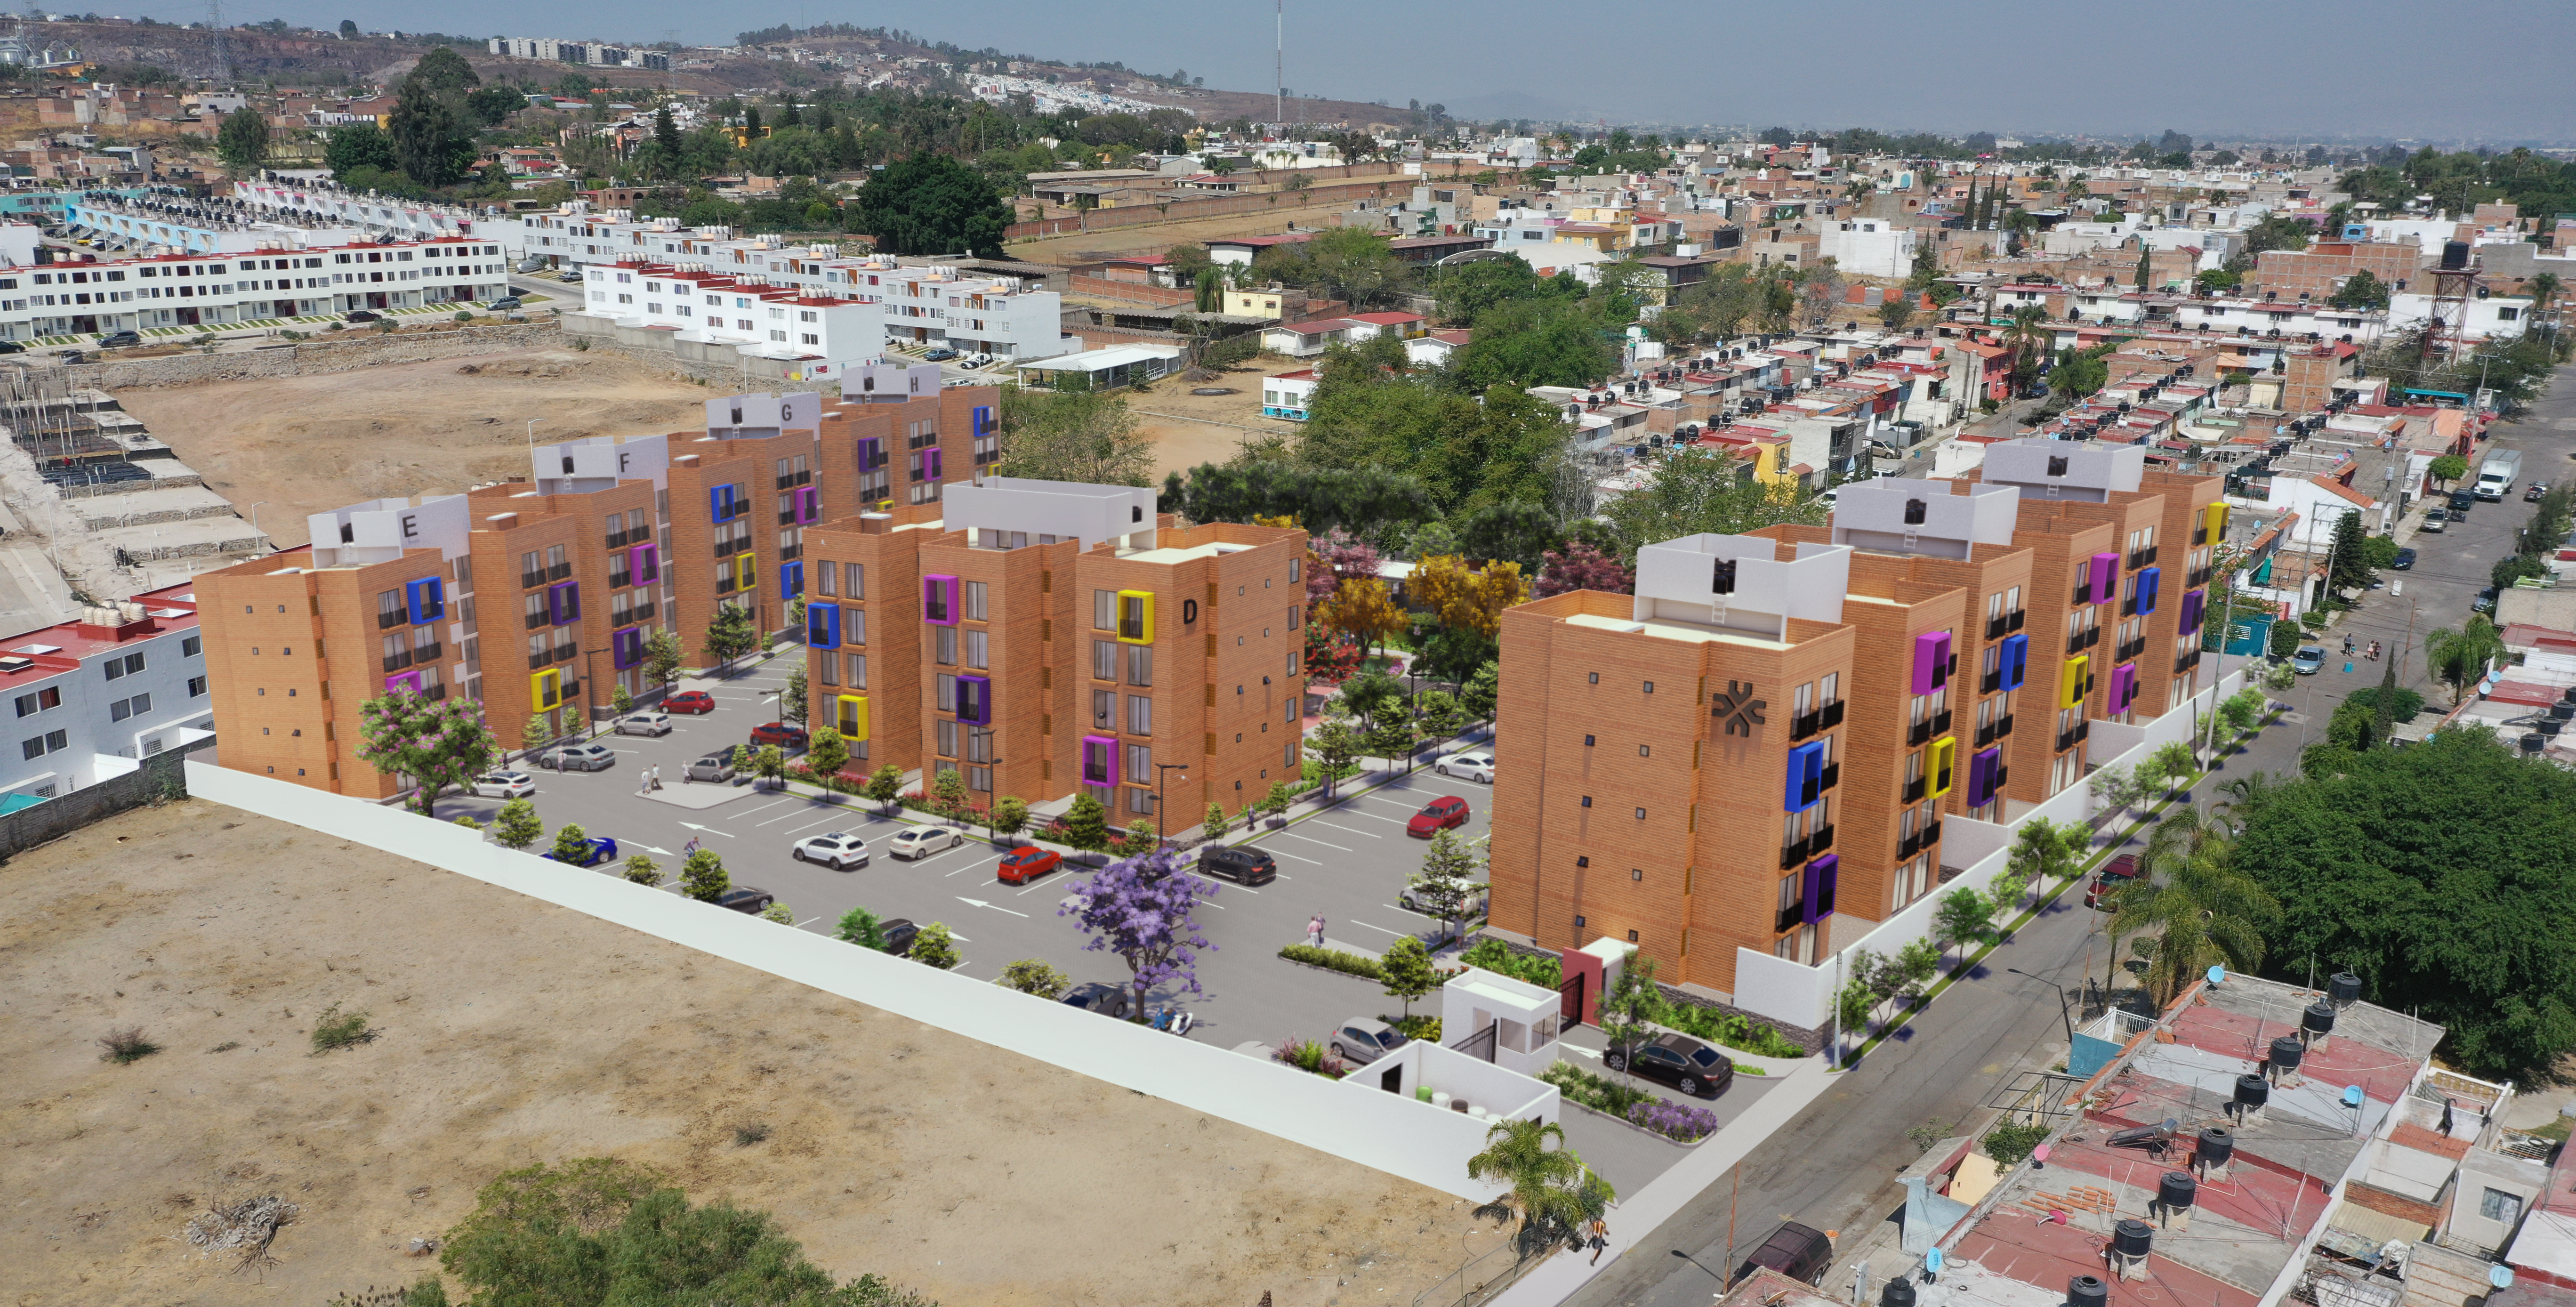 Altos San Gaspar, conjunto habitacional con jardín y terraza de usos múltiples ubicado en Tonalá, Jalisco. 